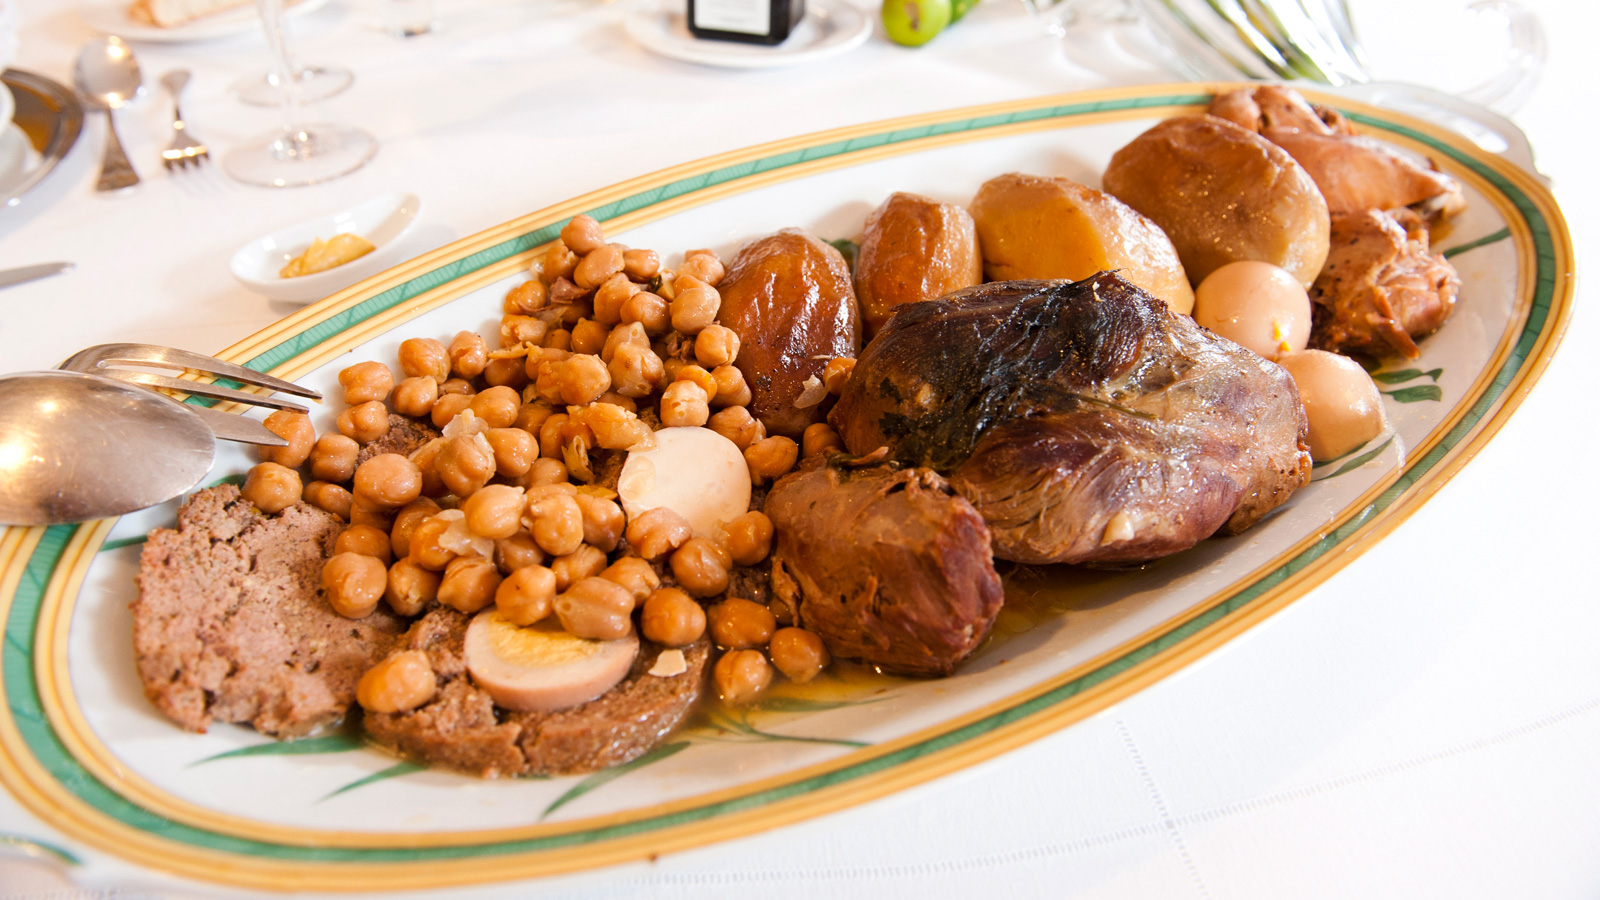 La cocina madrileña: platos típicos de Madrid - Especiales - Canal Cocina